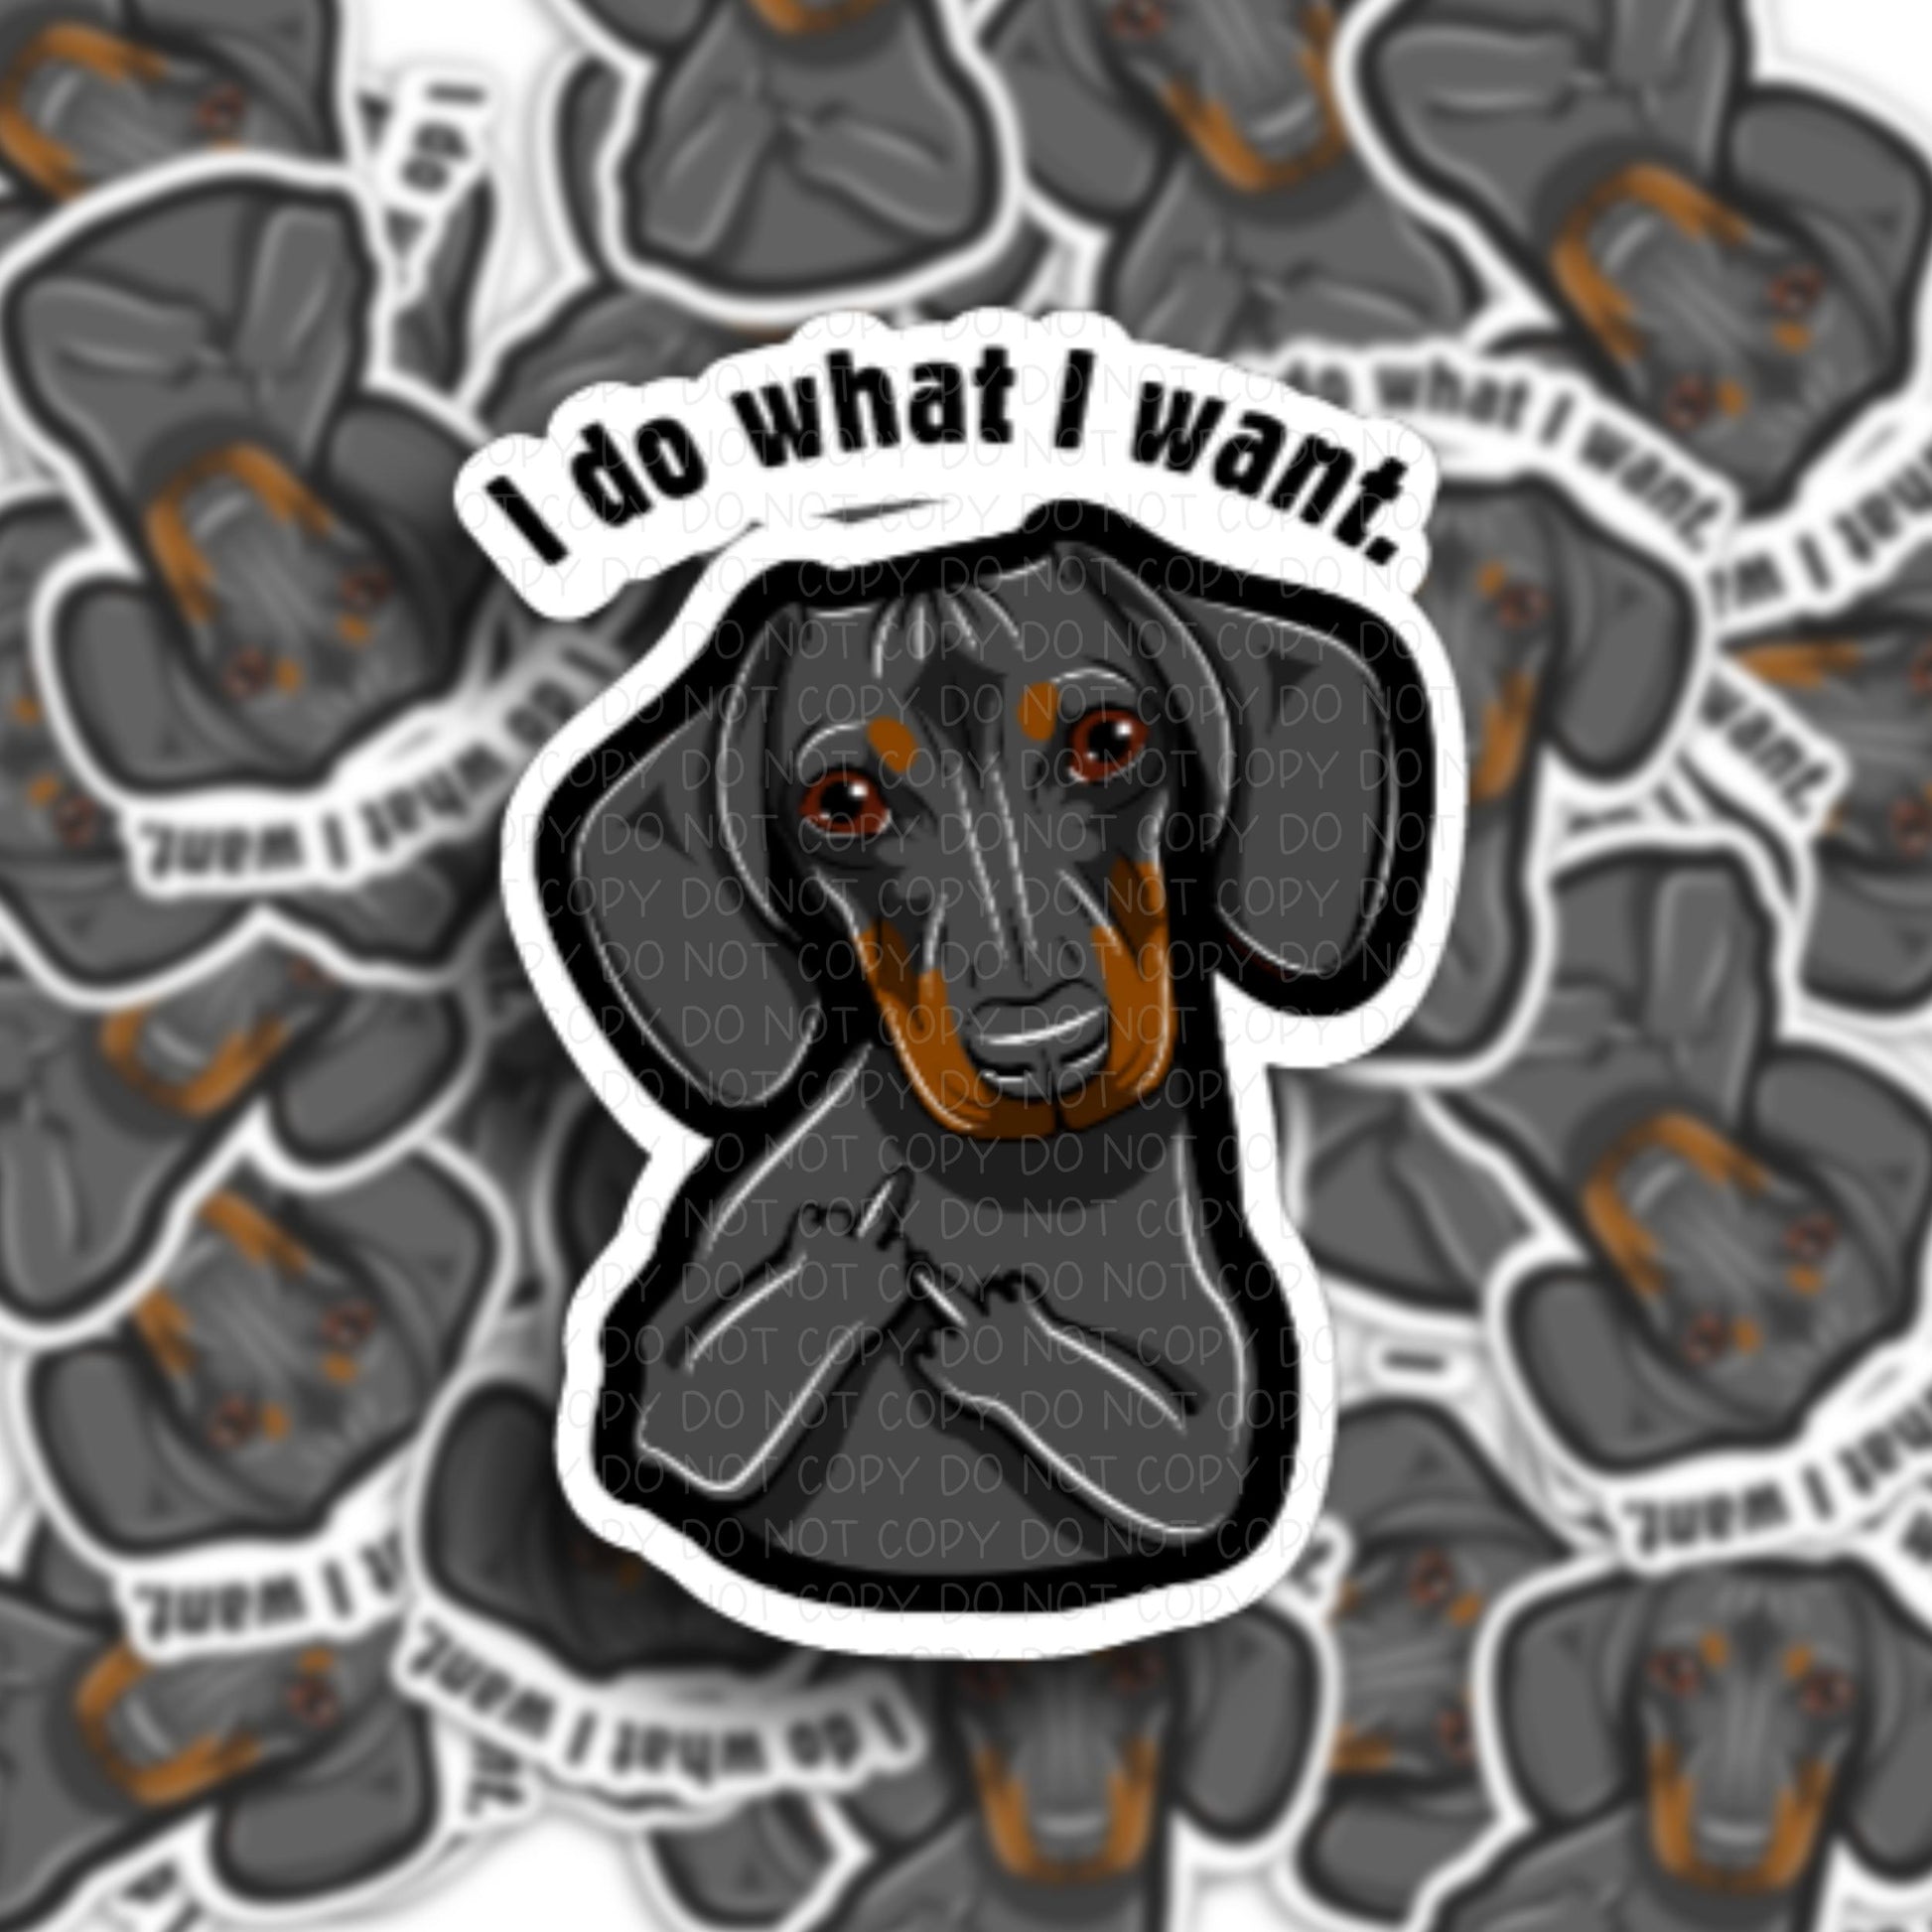 Dachshund " I do what I want" Vinyl Sticker.